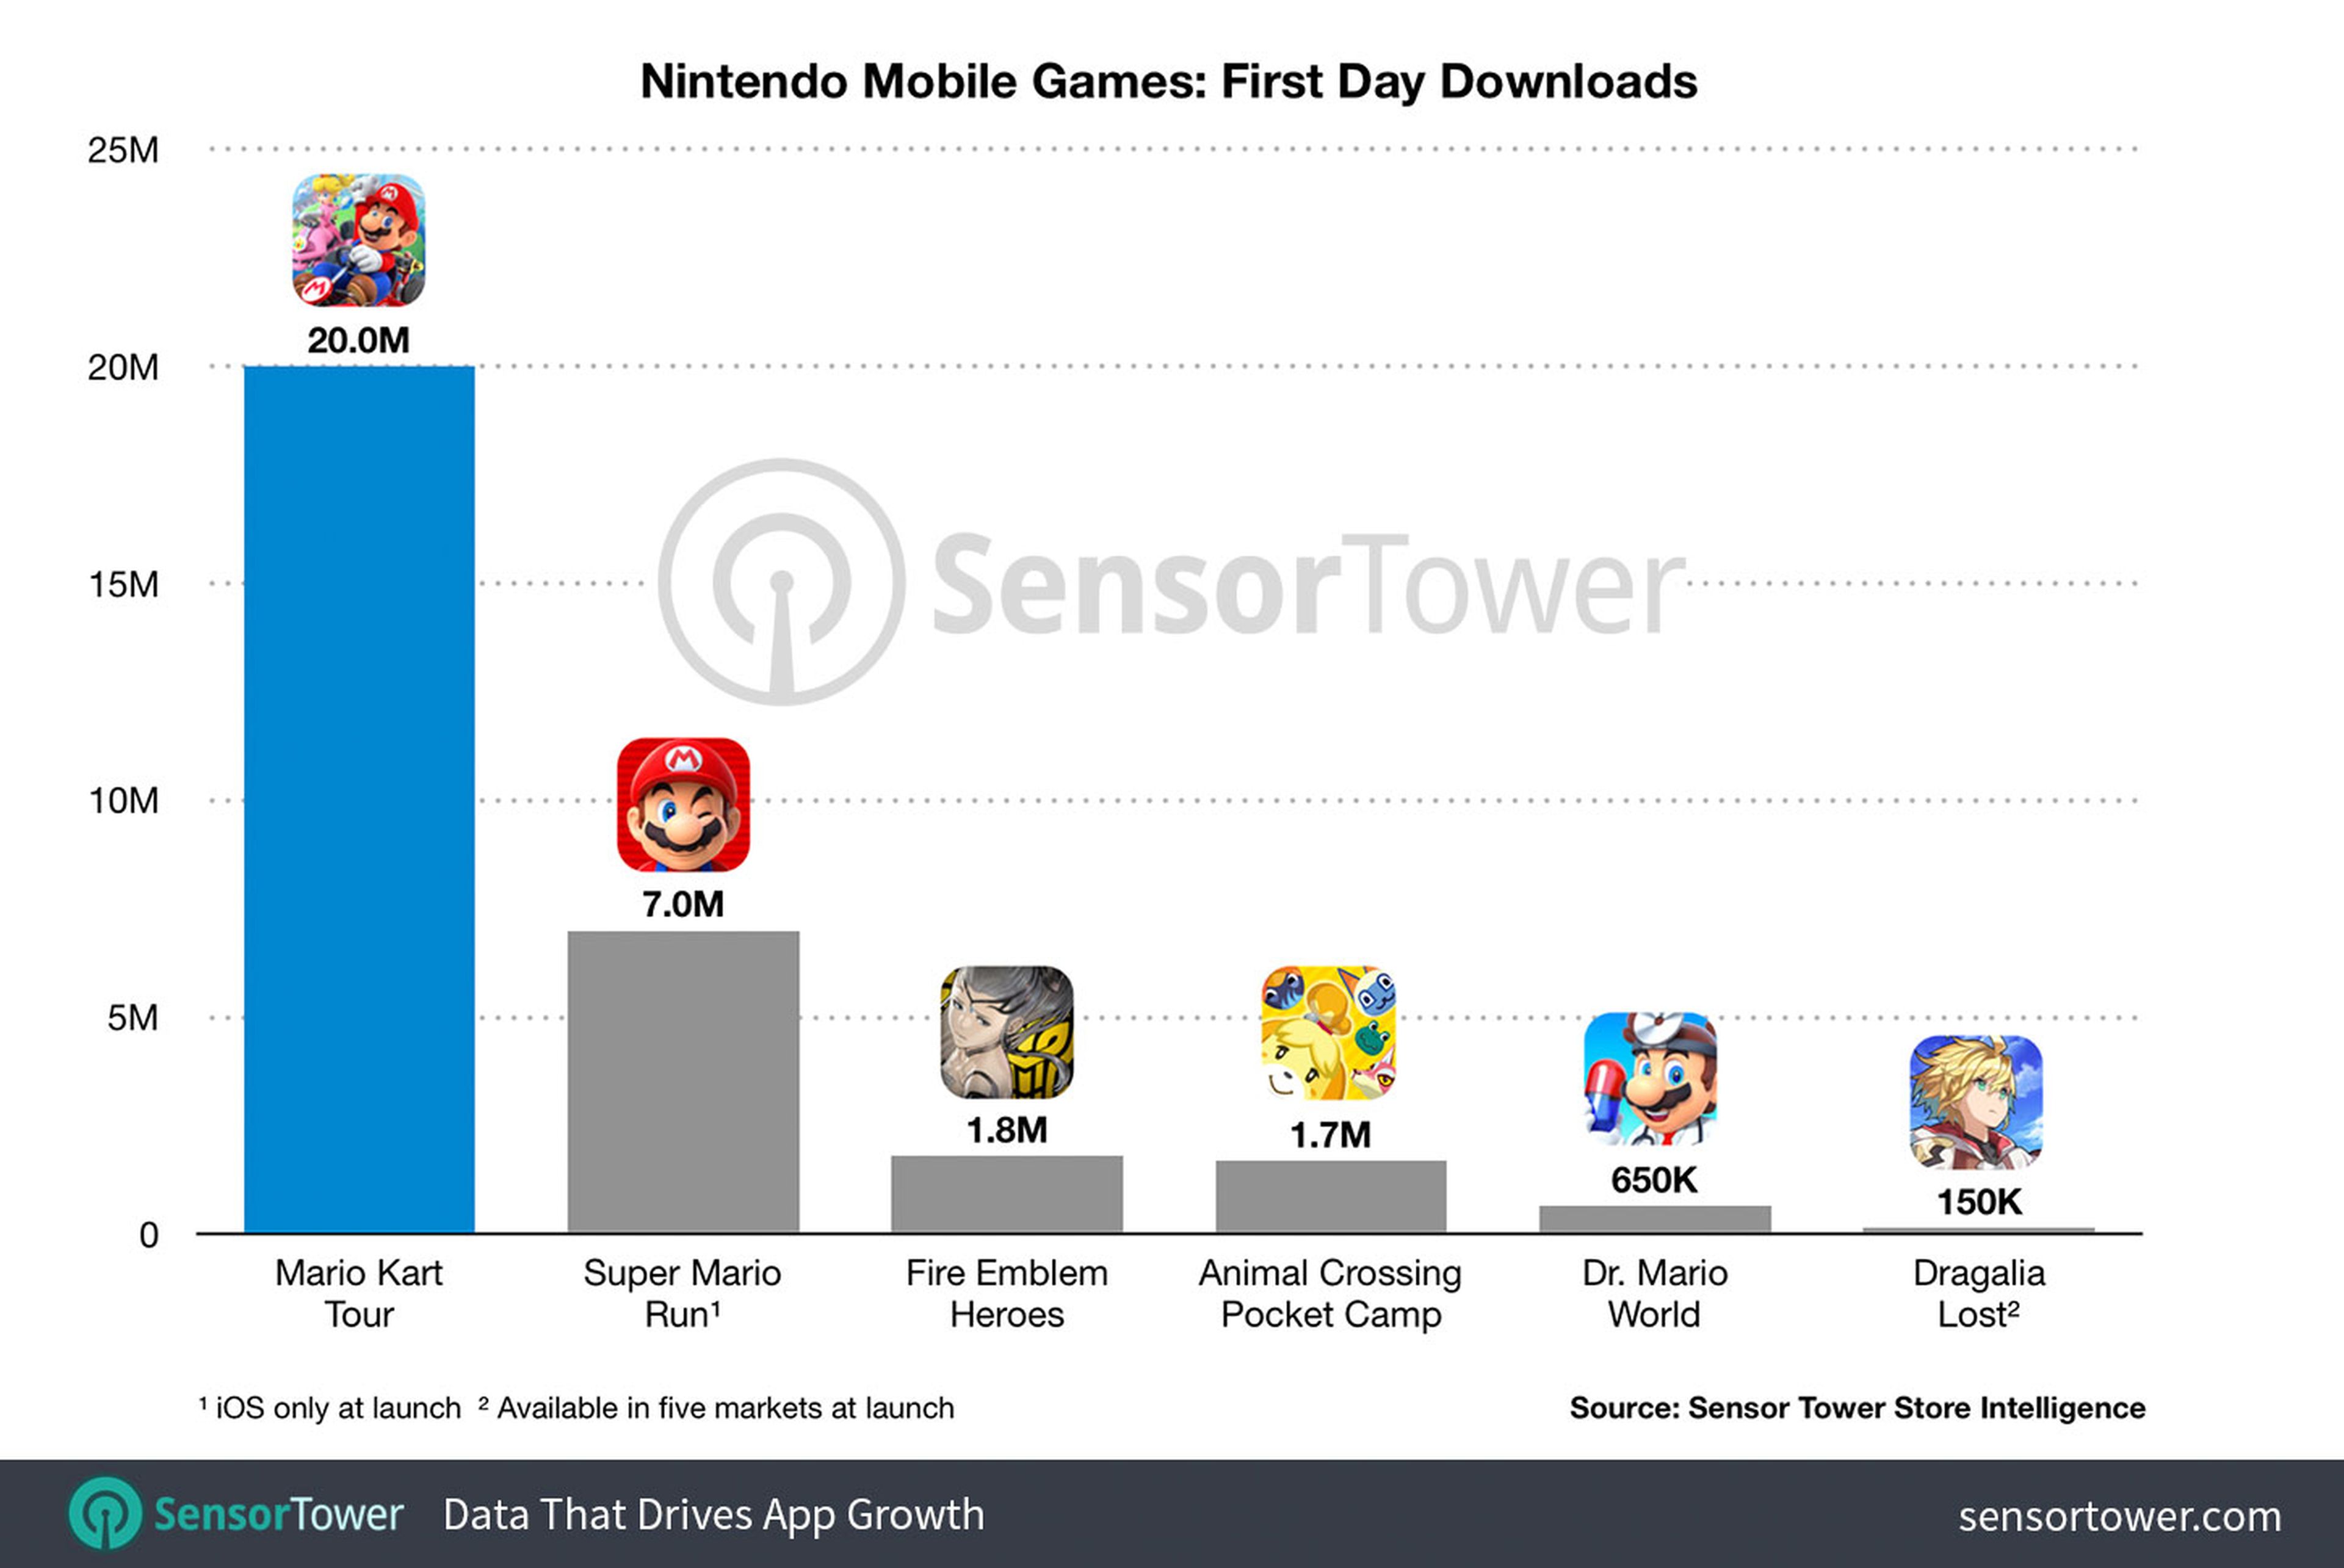 Descargas juegos de Nintendo el día de lanzamiento